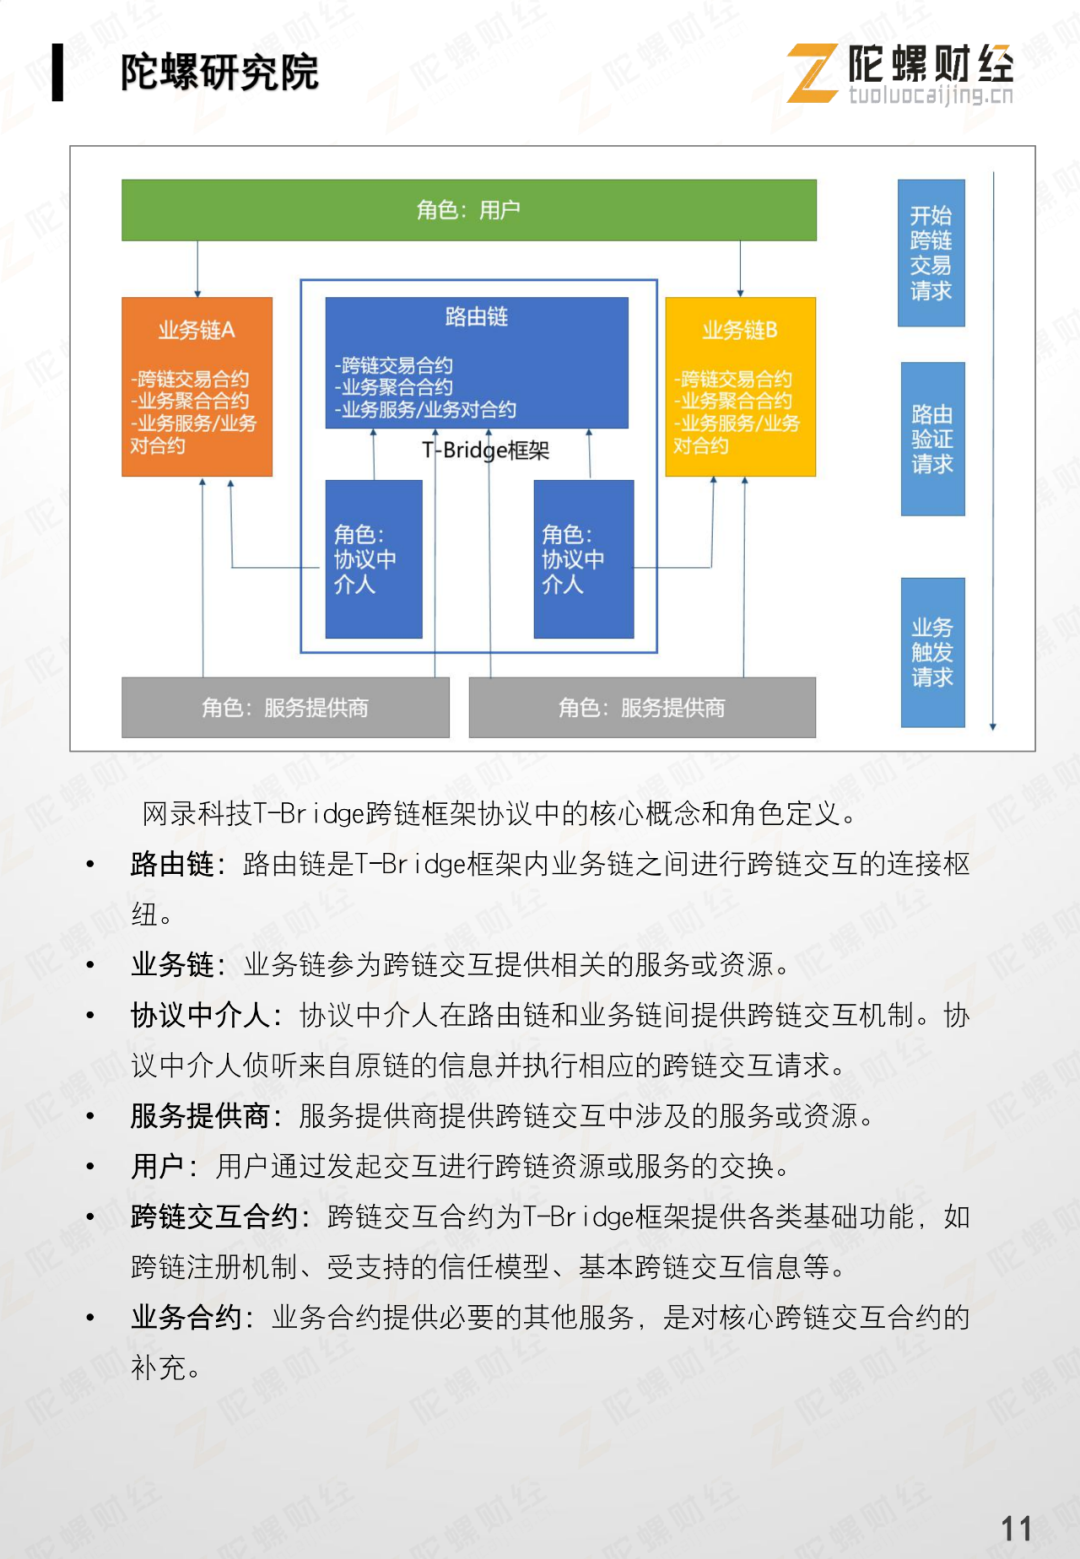 网录科技行业案例 | 贵阳市红云社区助困区块链系统